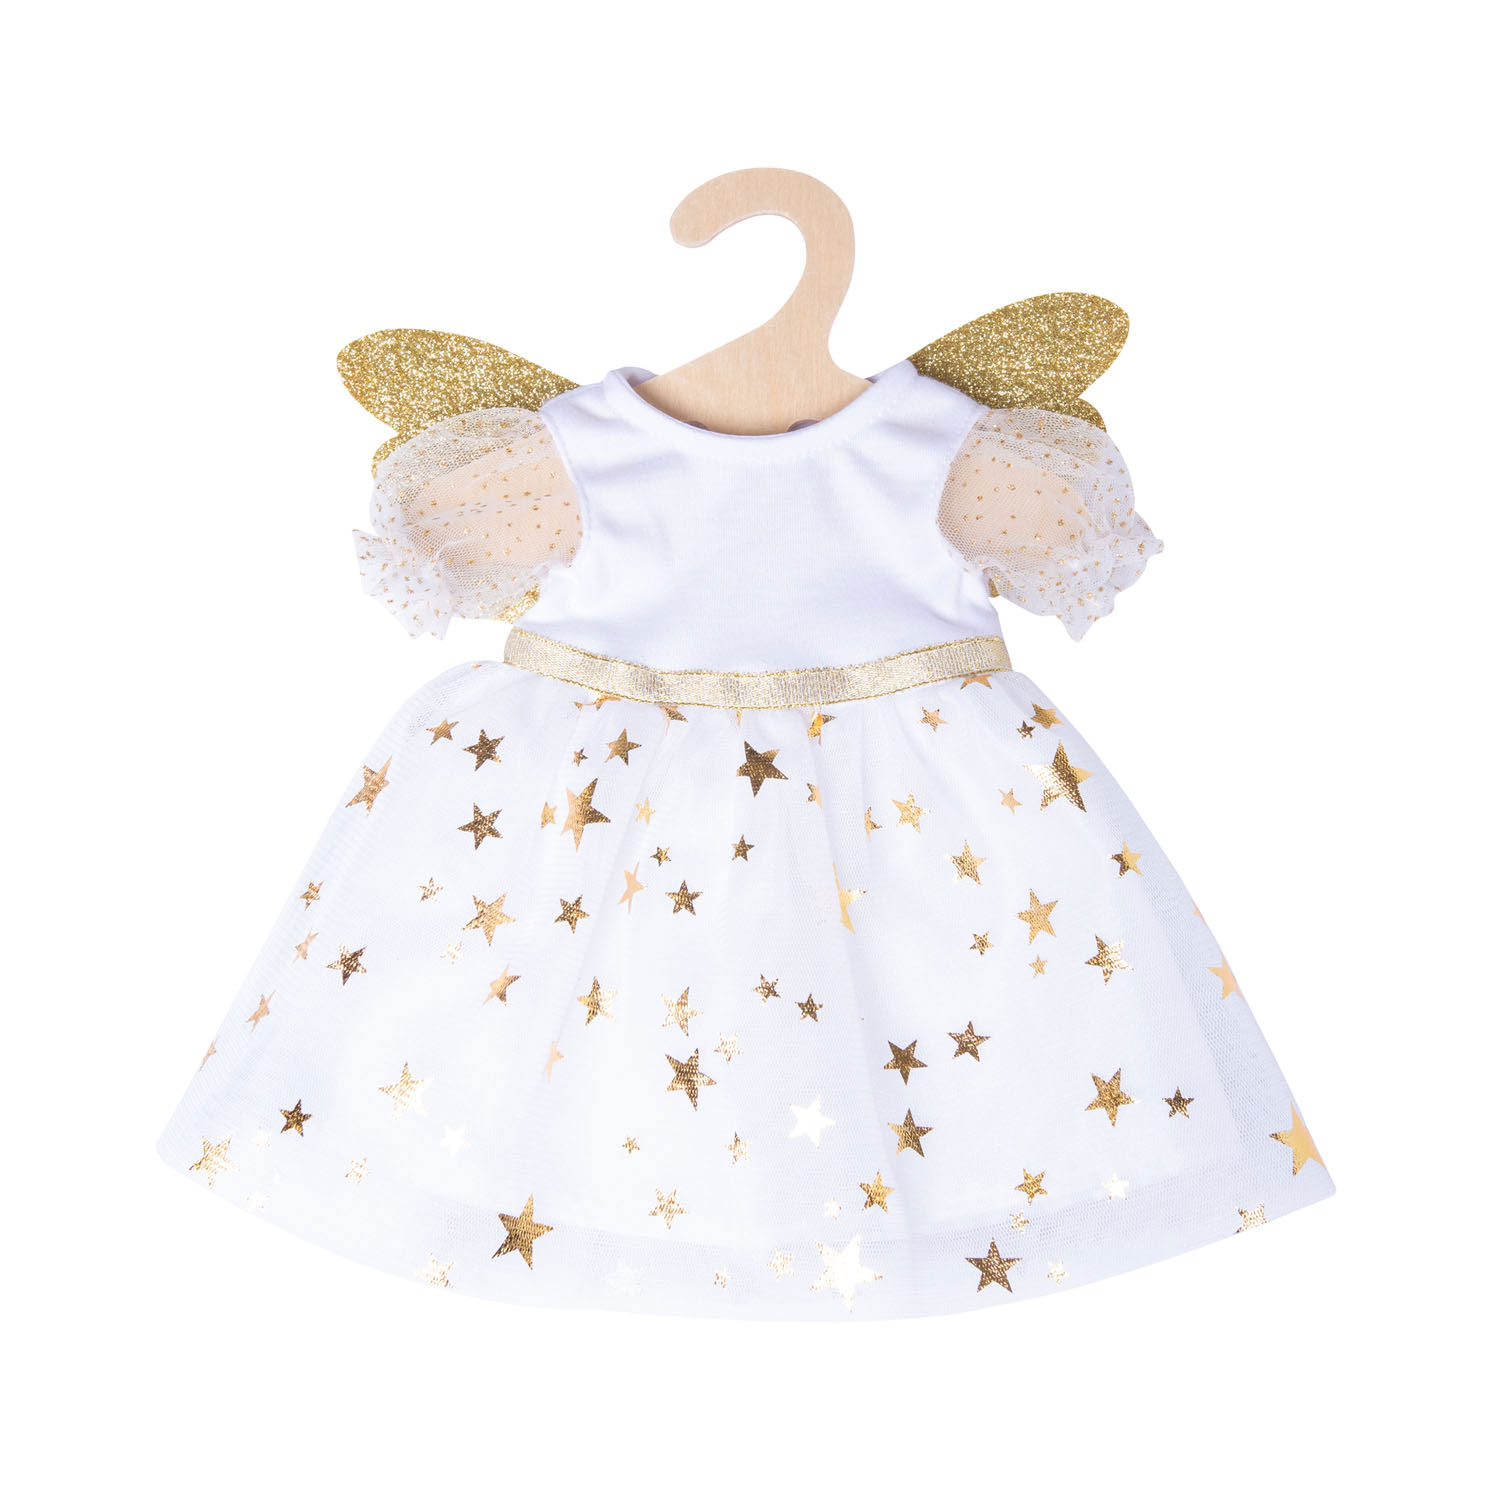 Puppenkleid Engel mit Sternen, 35-45 cm